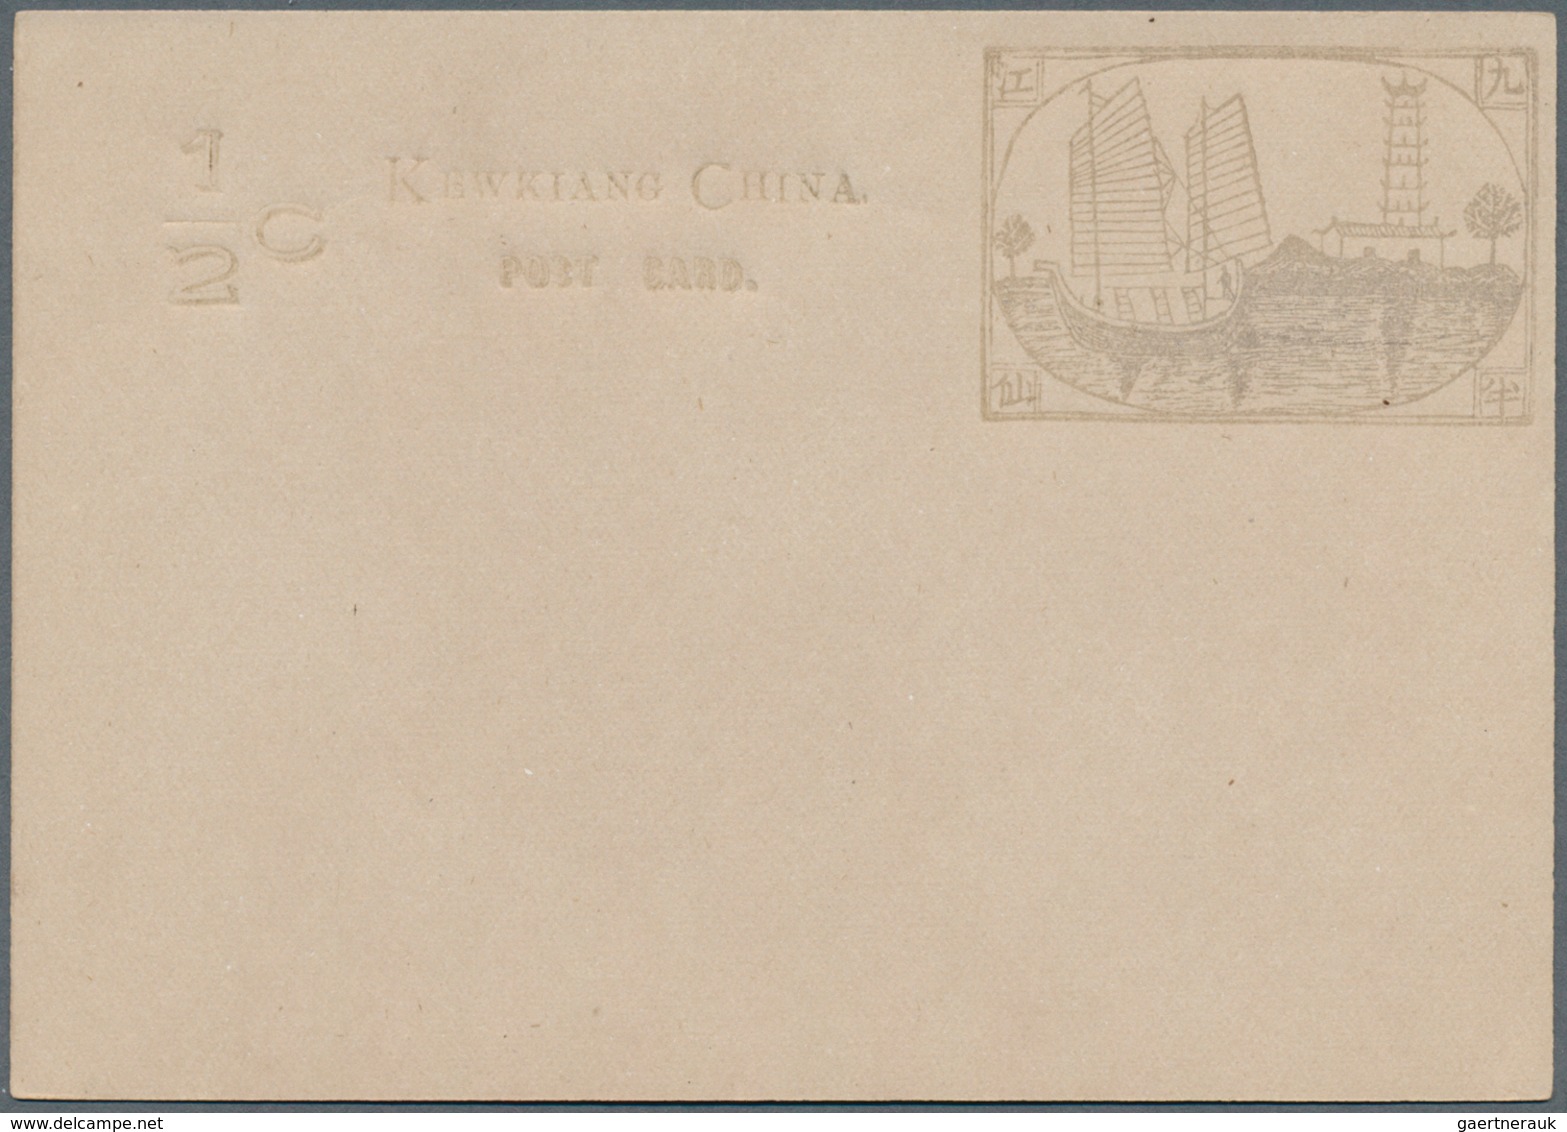 22410 China - Ganzsachen: Local Posts, Mint Stationery, Kewking Card 1/2 C. (7, Shades), Chinkiang Card 1 - Cartes Postales